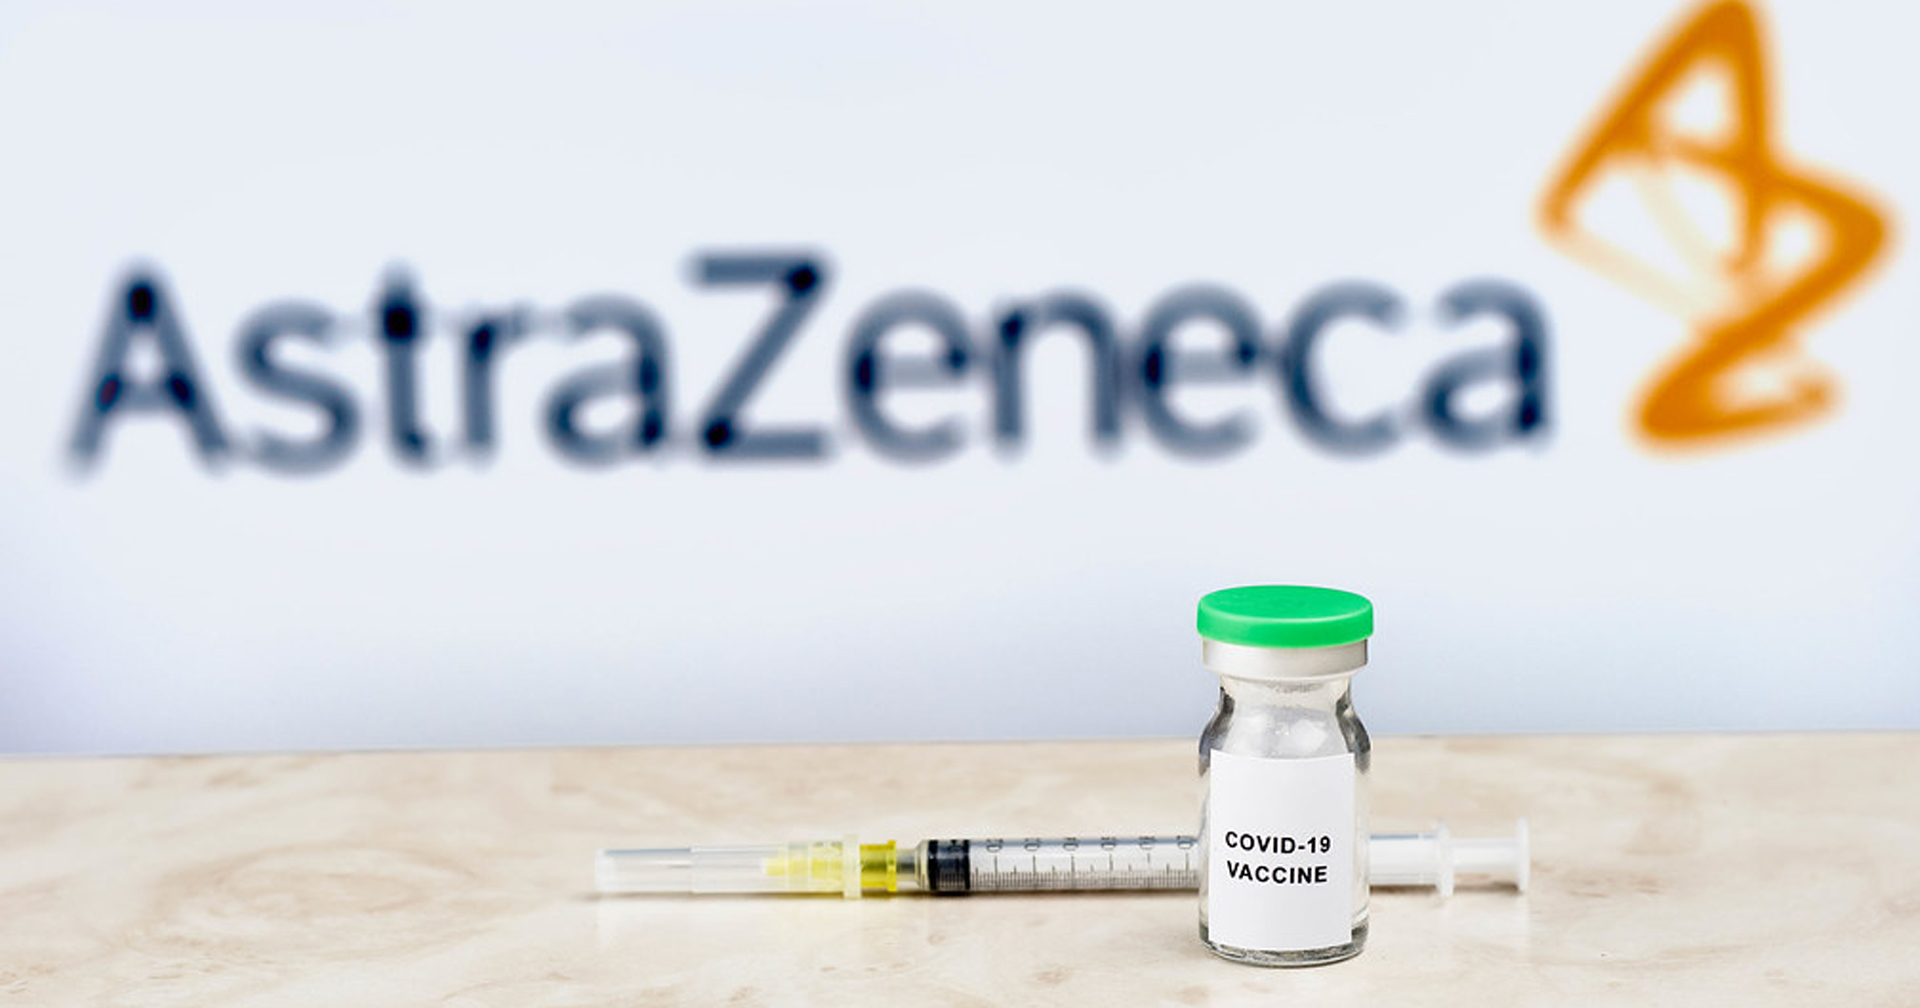 เดนมาร์กเลิกใช้วัคซีน AstraZeneca เป็นประเทศแรกของโลก